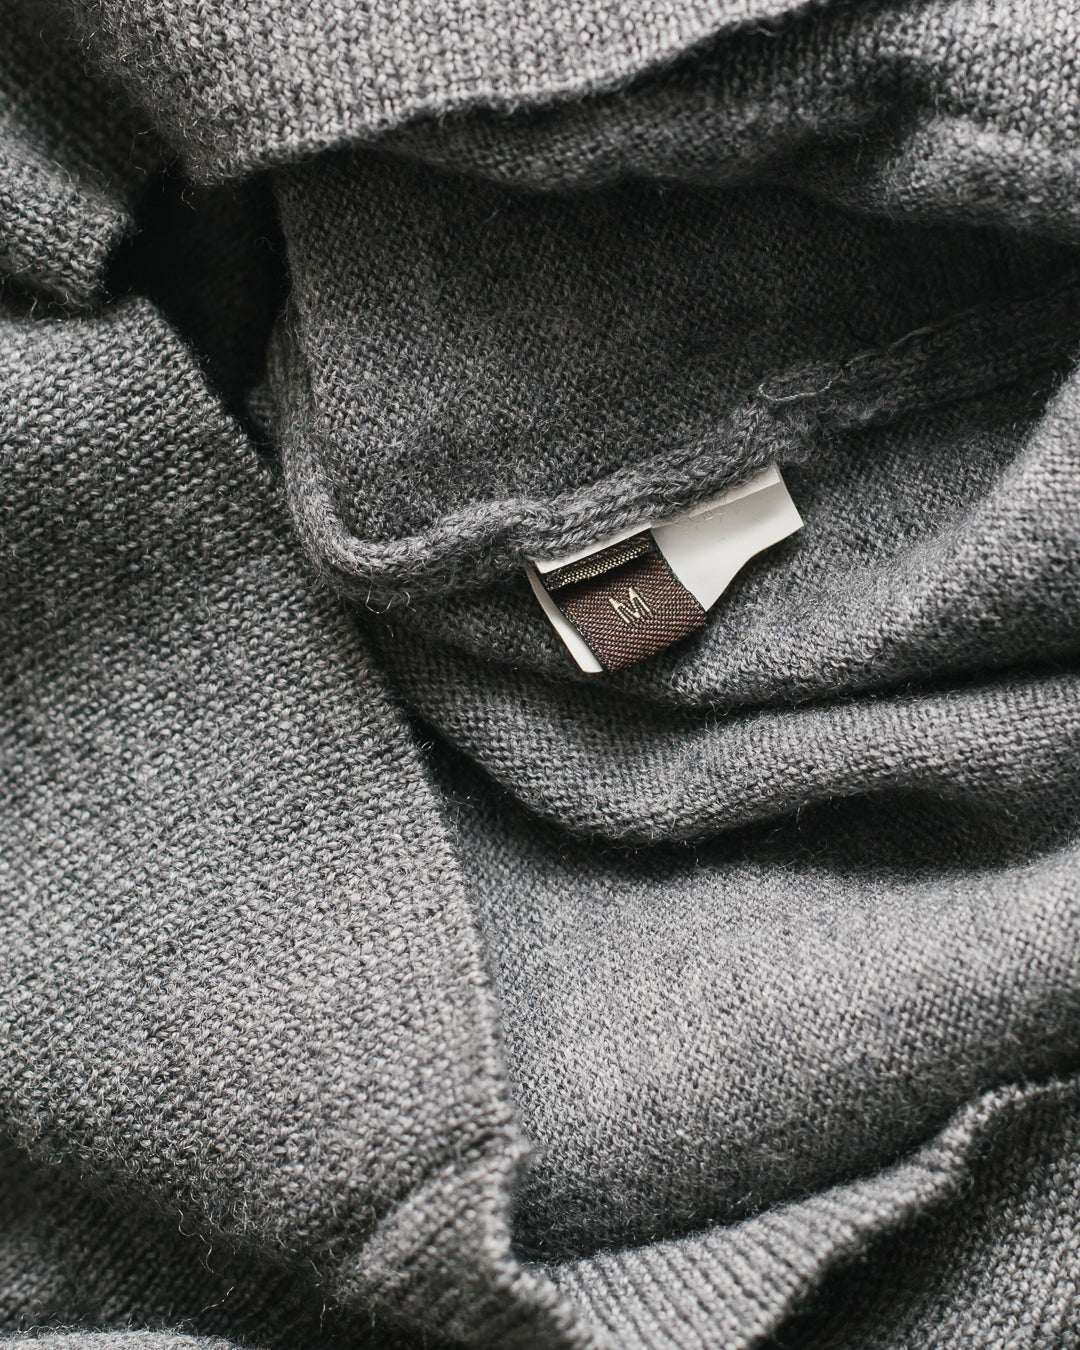 Roberto Cavalli Emblem Knit Sweater